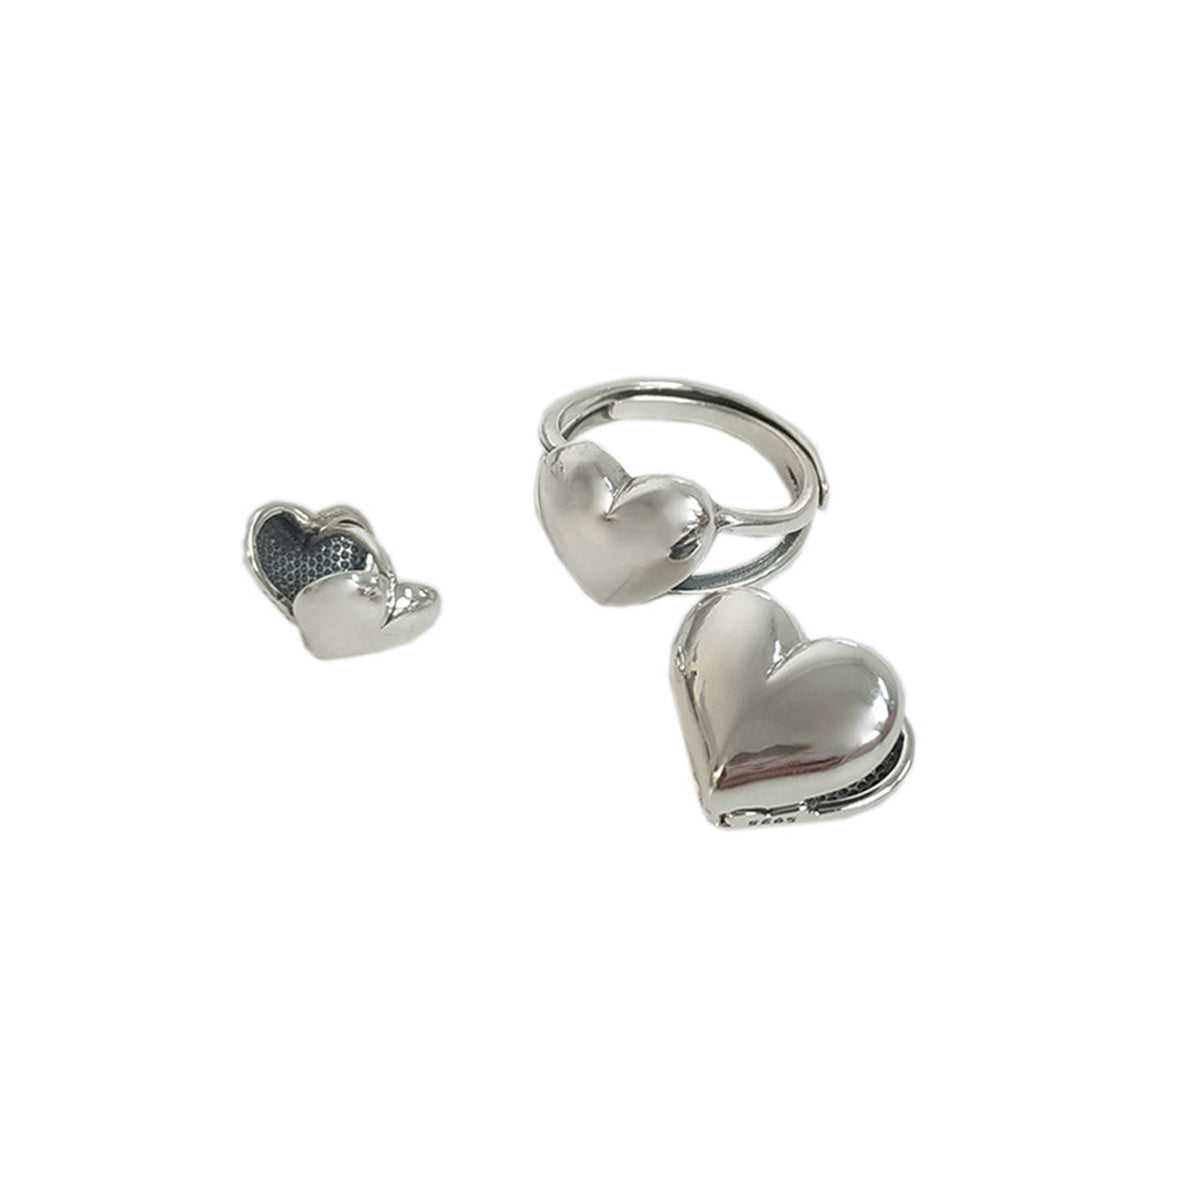 Hypoallergenic 925 Sterling Silver Stud Earrings Dainty Simple Heart Earrings for Women Girls